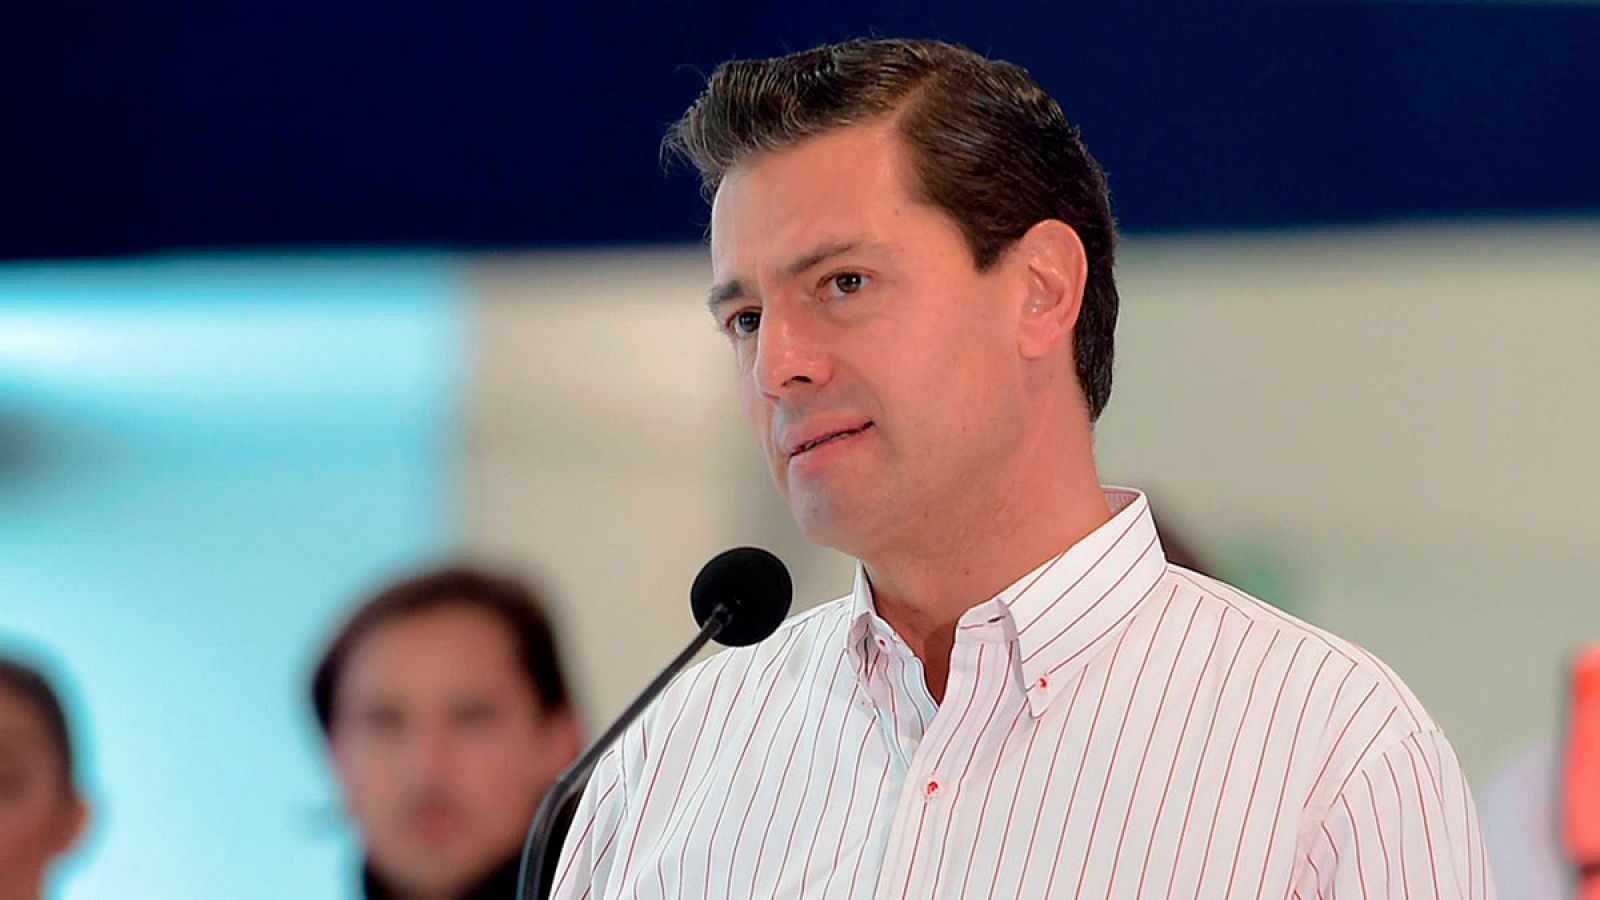 El presidente mexicano Enrique Peña Nieto anuncia un nuevo hallazgo de hidrocarburos